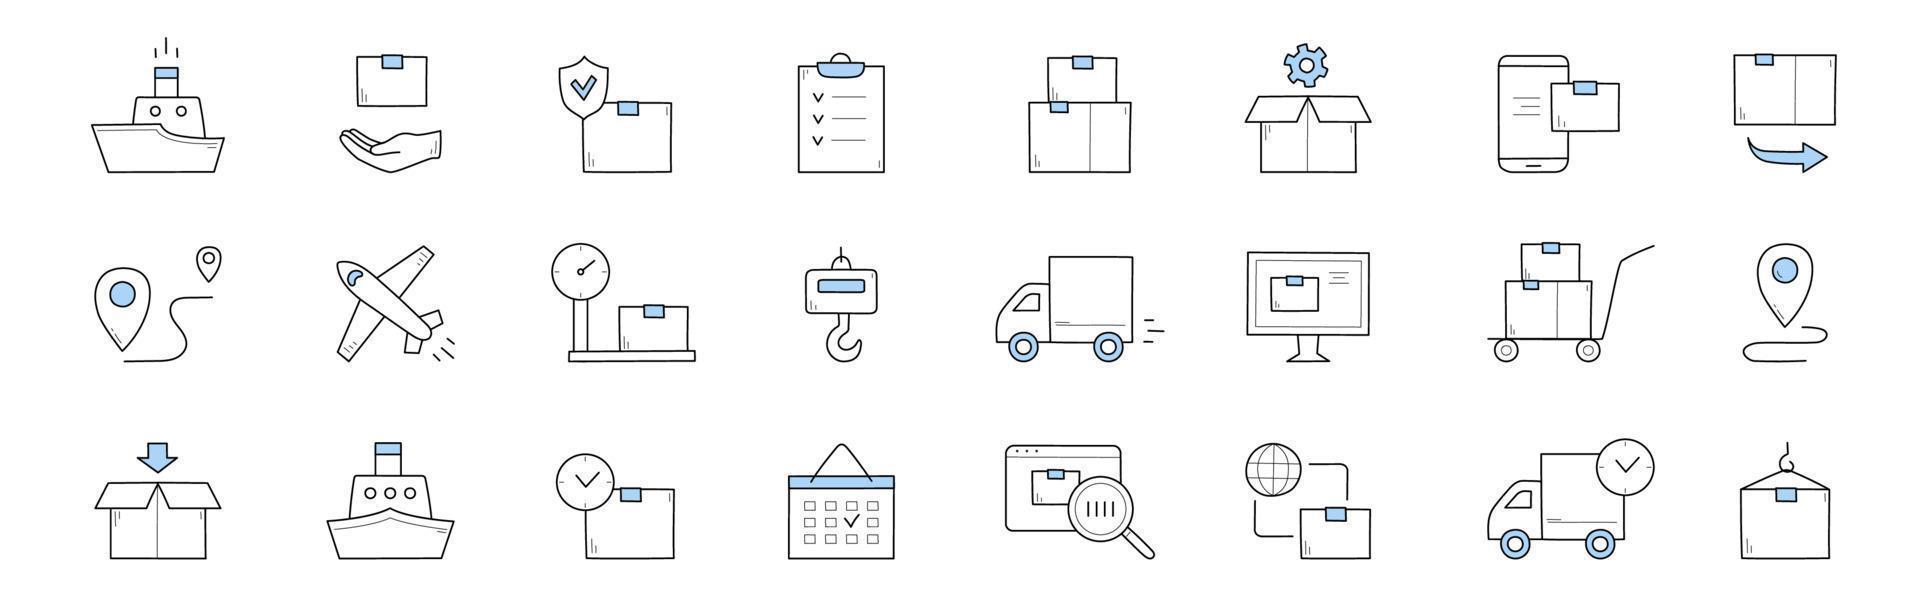 servicio de entrega y envío doodle iconos, signos vector